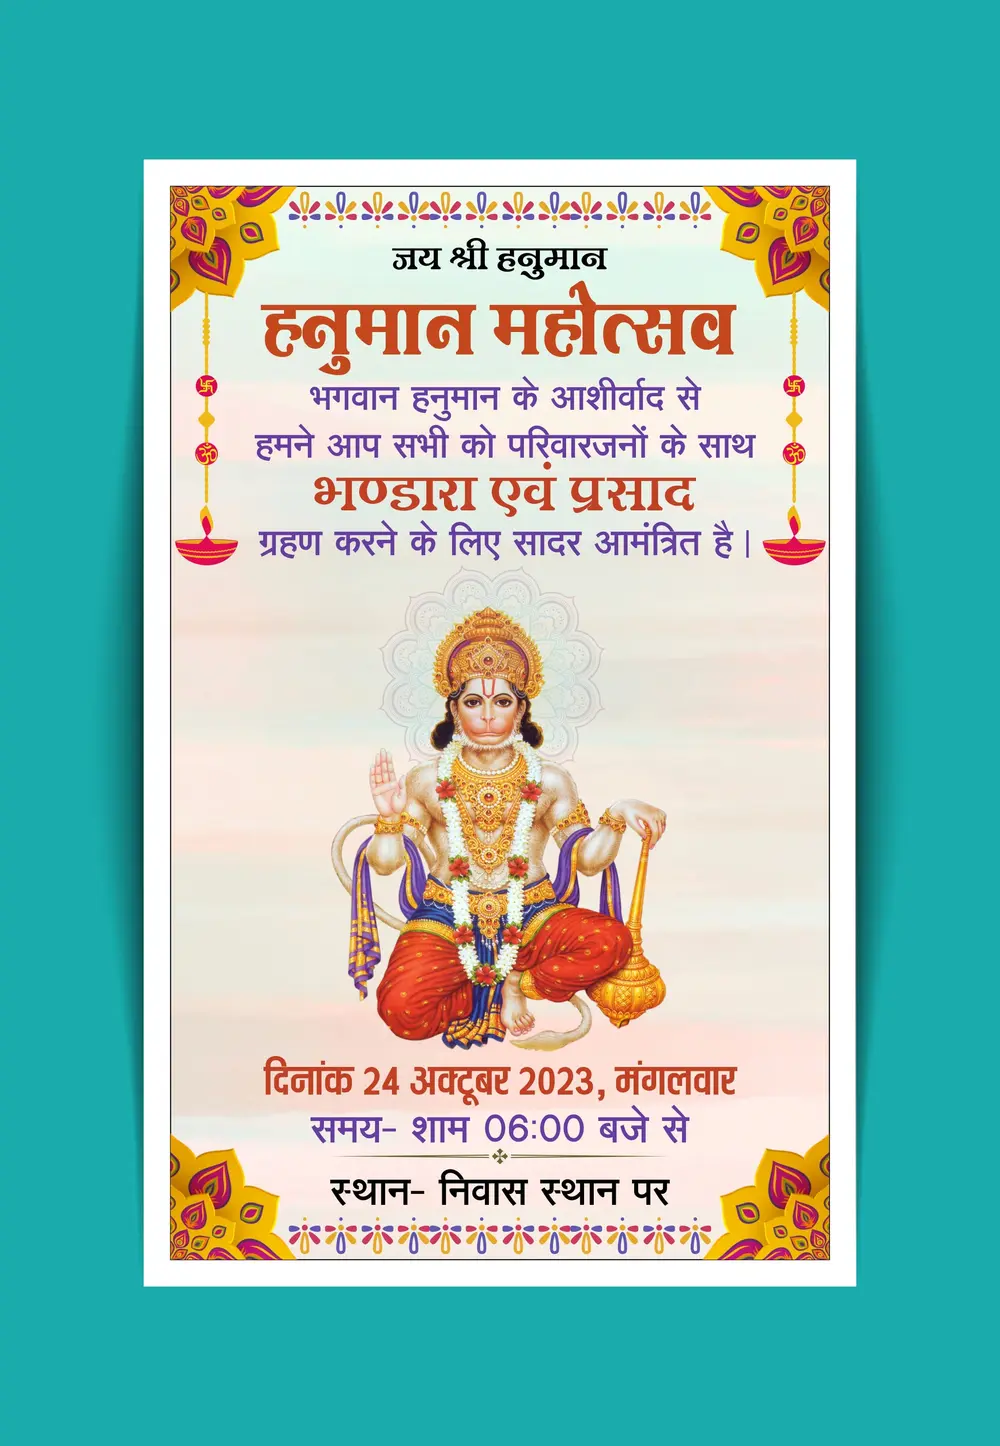 Celebrate Hanuman Jayanti Mahotsav with a grand Bhandara 241023